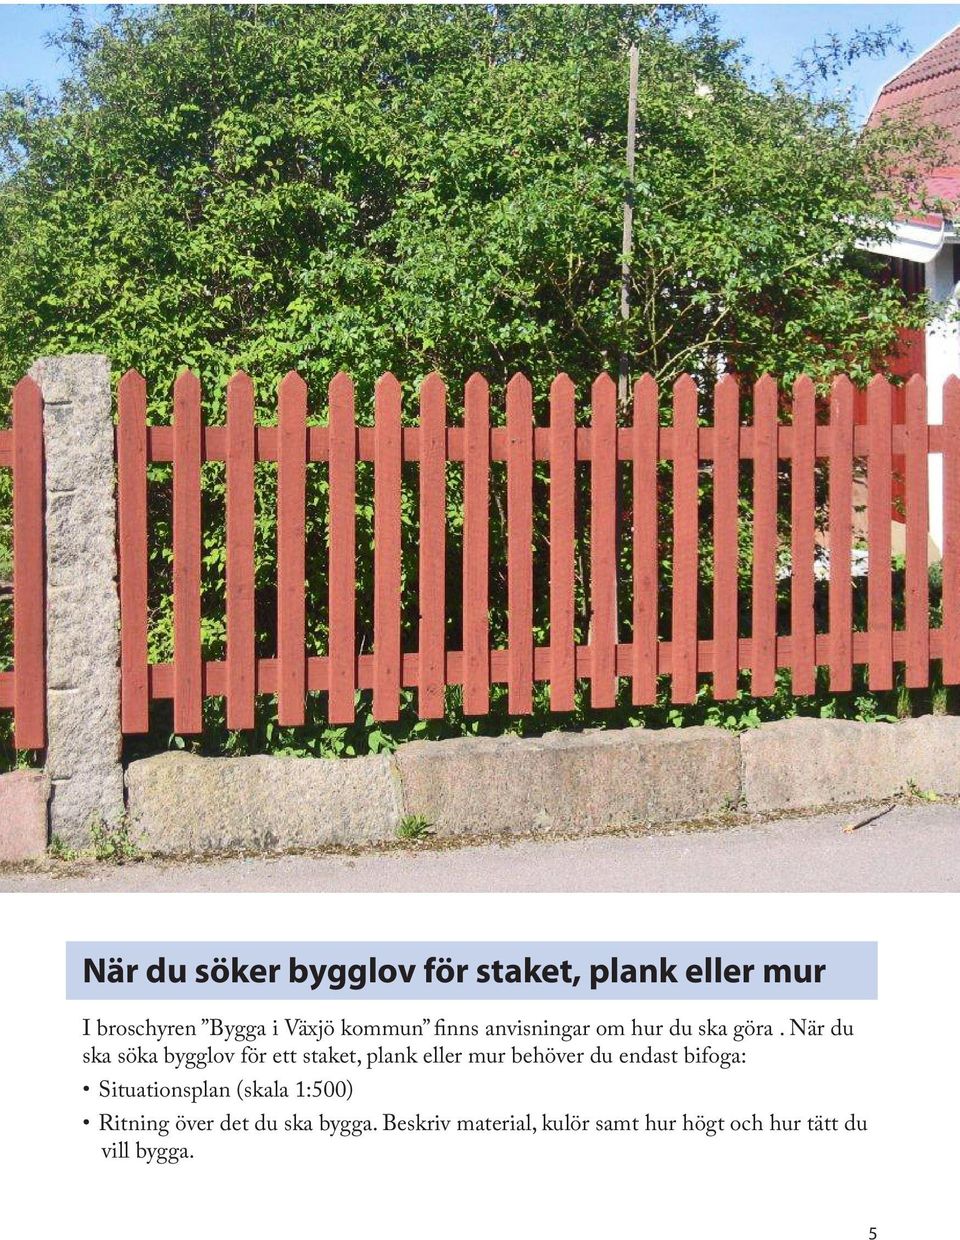 När du ska söka bygglov för ett staket, plank eller mur behöver du endast bifoga: